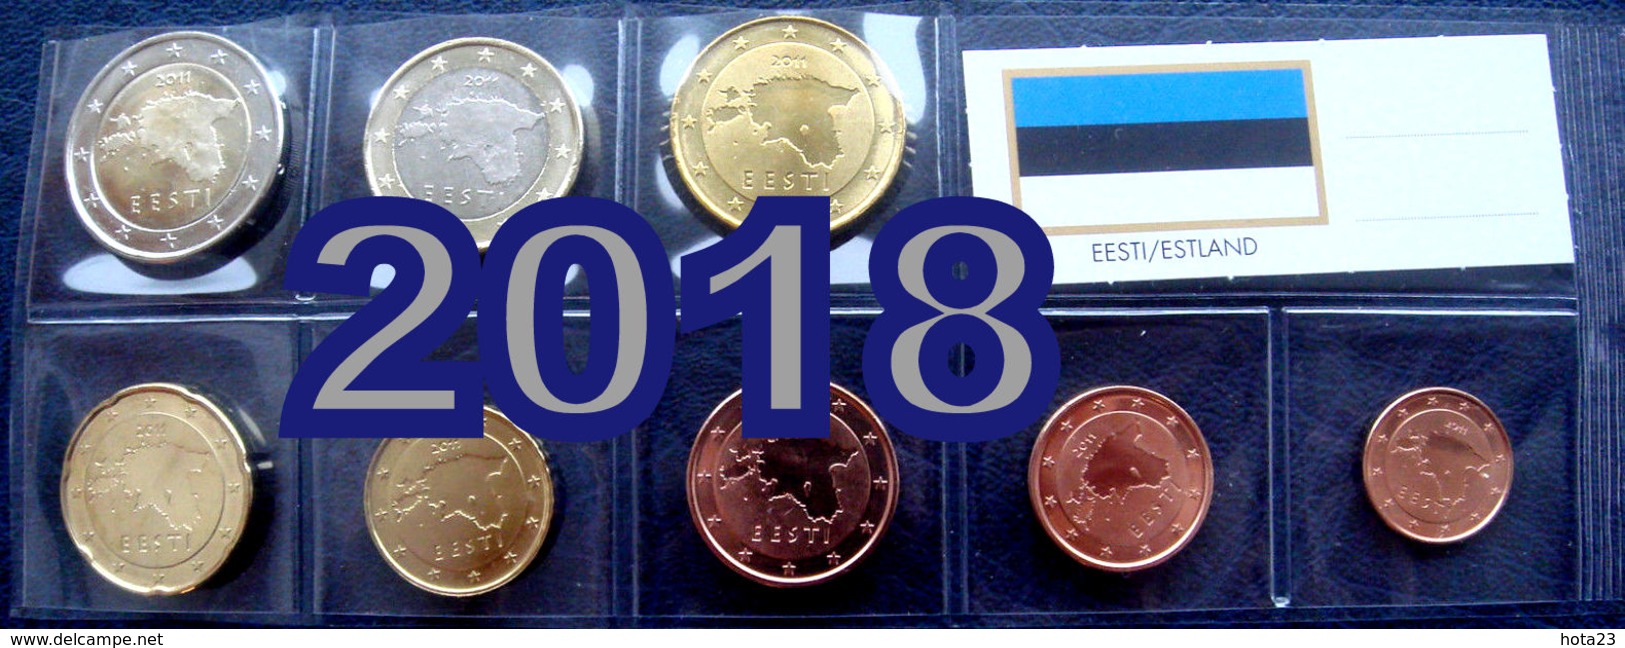 2018 ESTLAND , ESTONIA Münzen 1 Cent - 2 Euro 3,88 Eiro 2018 COINS UNZ / UNC - Estonia